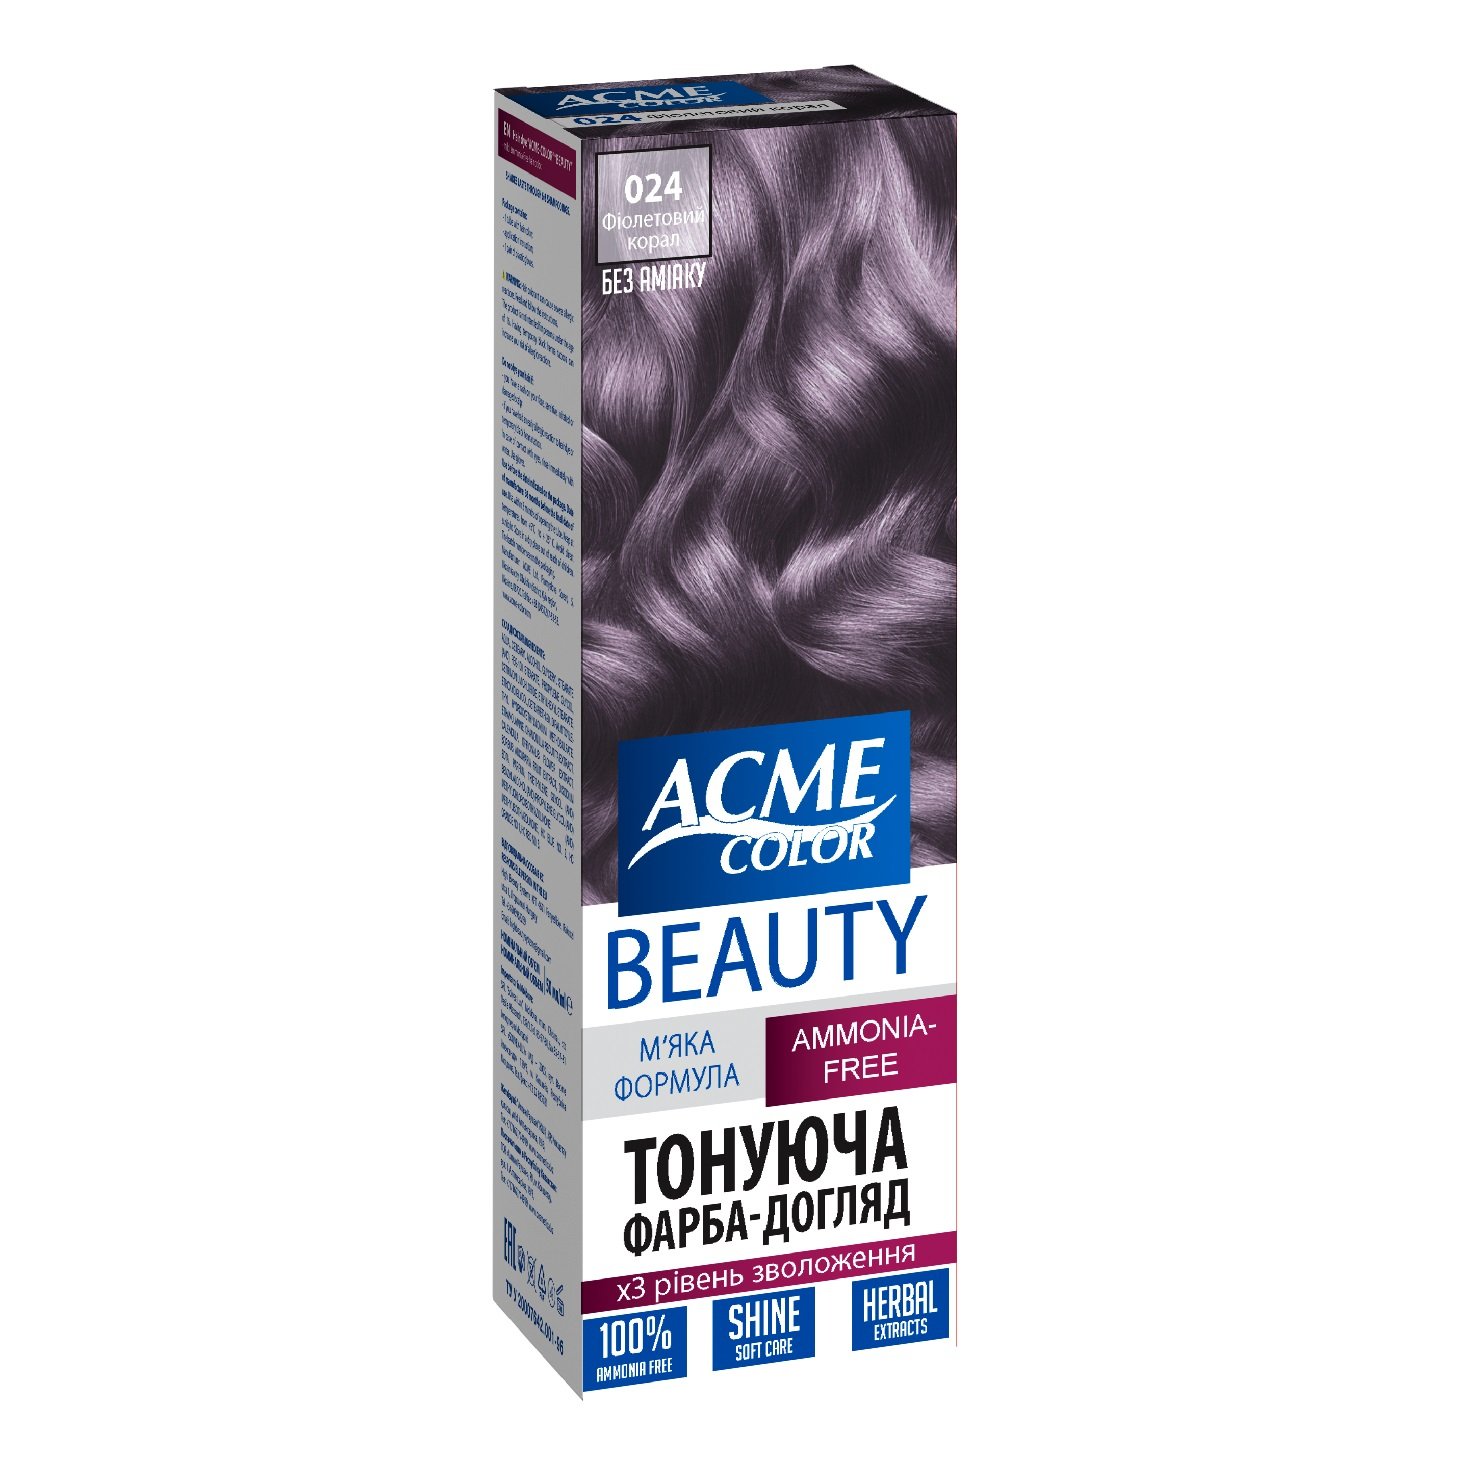 Гель-фарба для волосся Acme-color Beauty, відтінок 024 (Фіолетовий корал), 69 г - фото 1